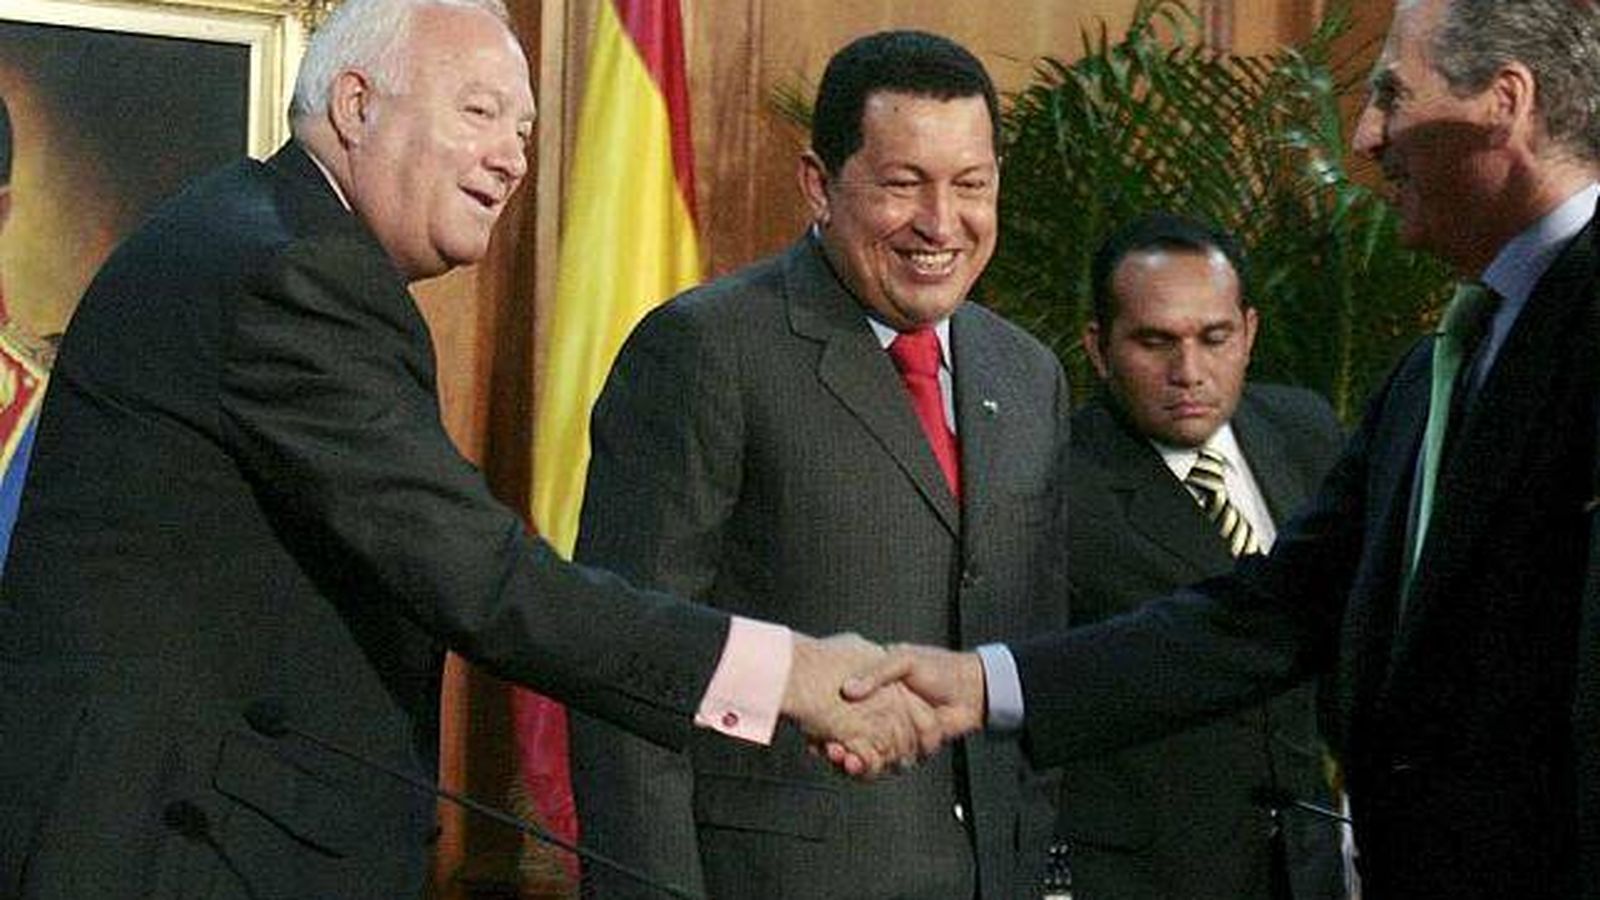 Foto: Miguel Ángel Moratinos saluda al entonces presidente de Iberinco y hoy embajador de España en París, Ramón de Miguel, en presencia de Hugo Chávez en Caracas en 2009. (EFE)